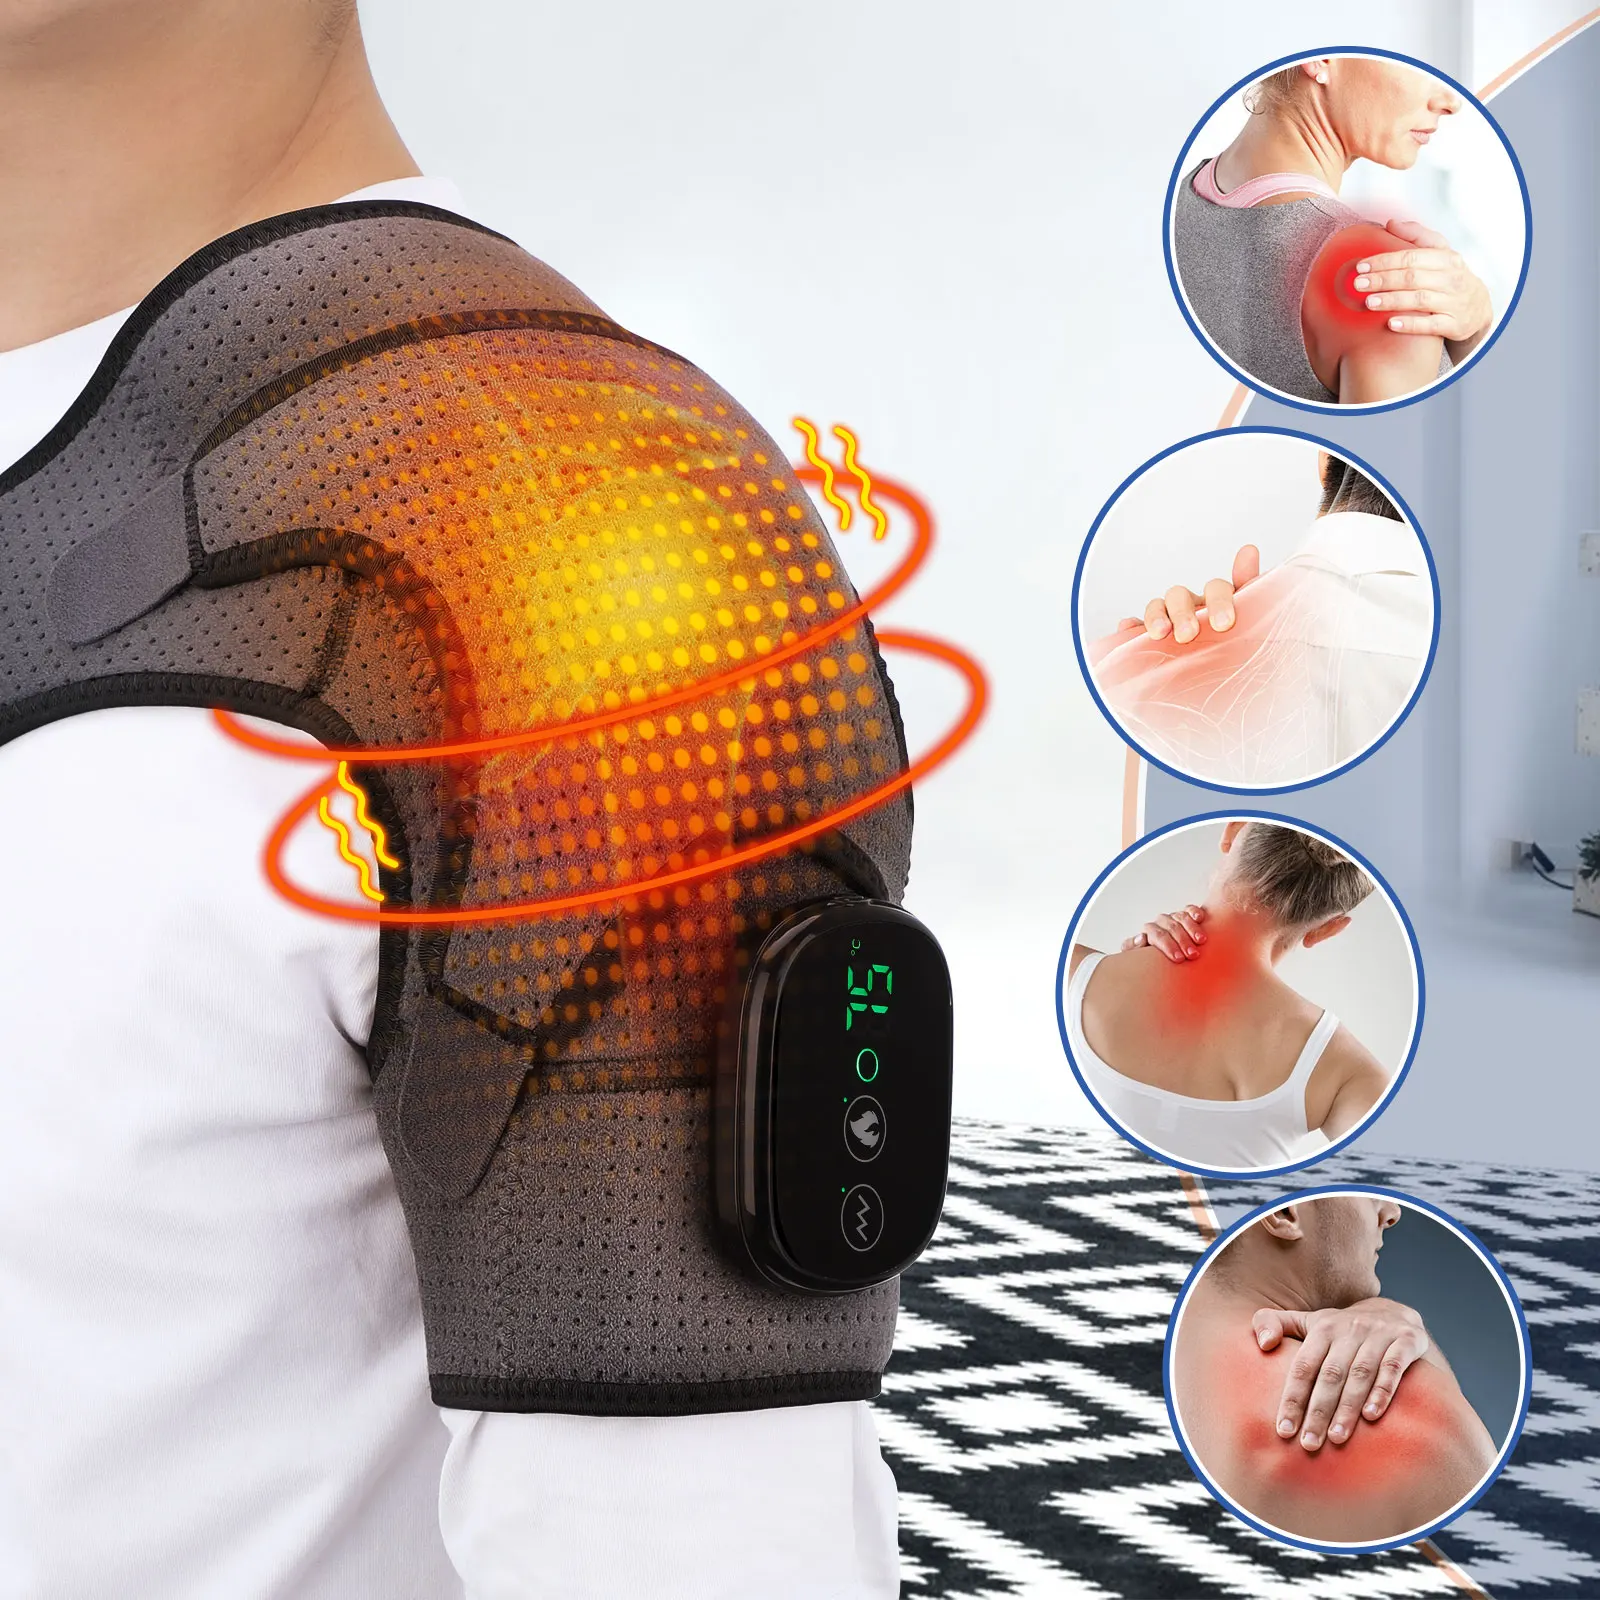 

Электрическая терапия с подогревом, плечевой Бандаж с подогревом, поддержка плечевого массажа, регулируемый светодиодный нагревательный пояс для лечения артрита, травм суставов